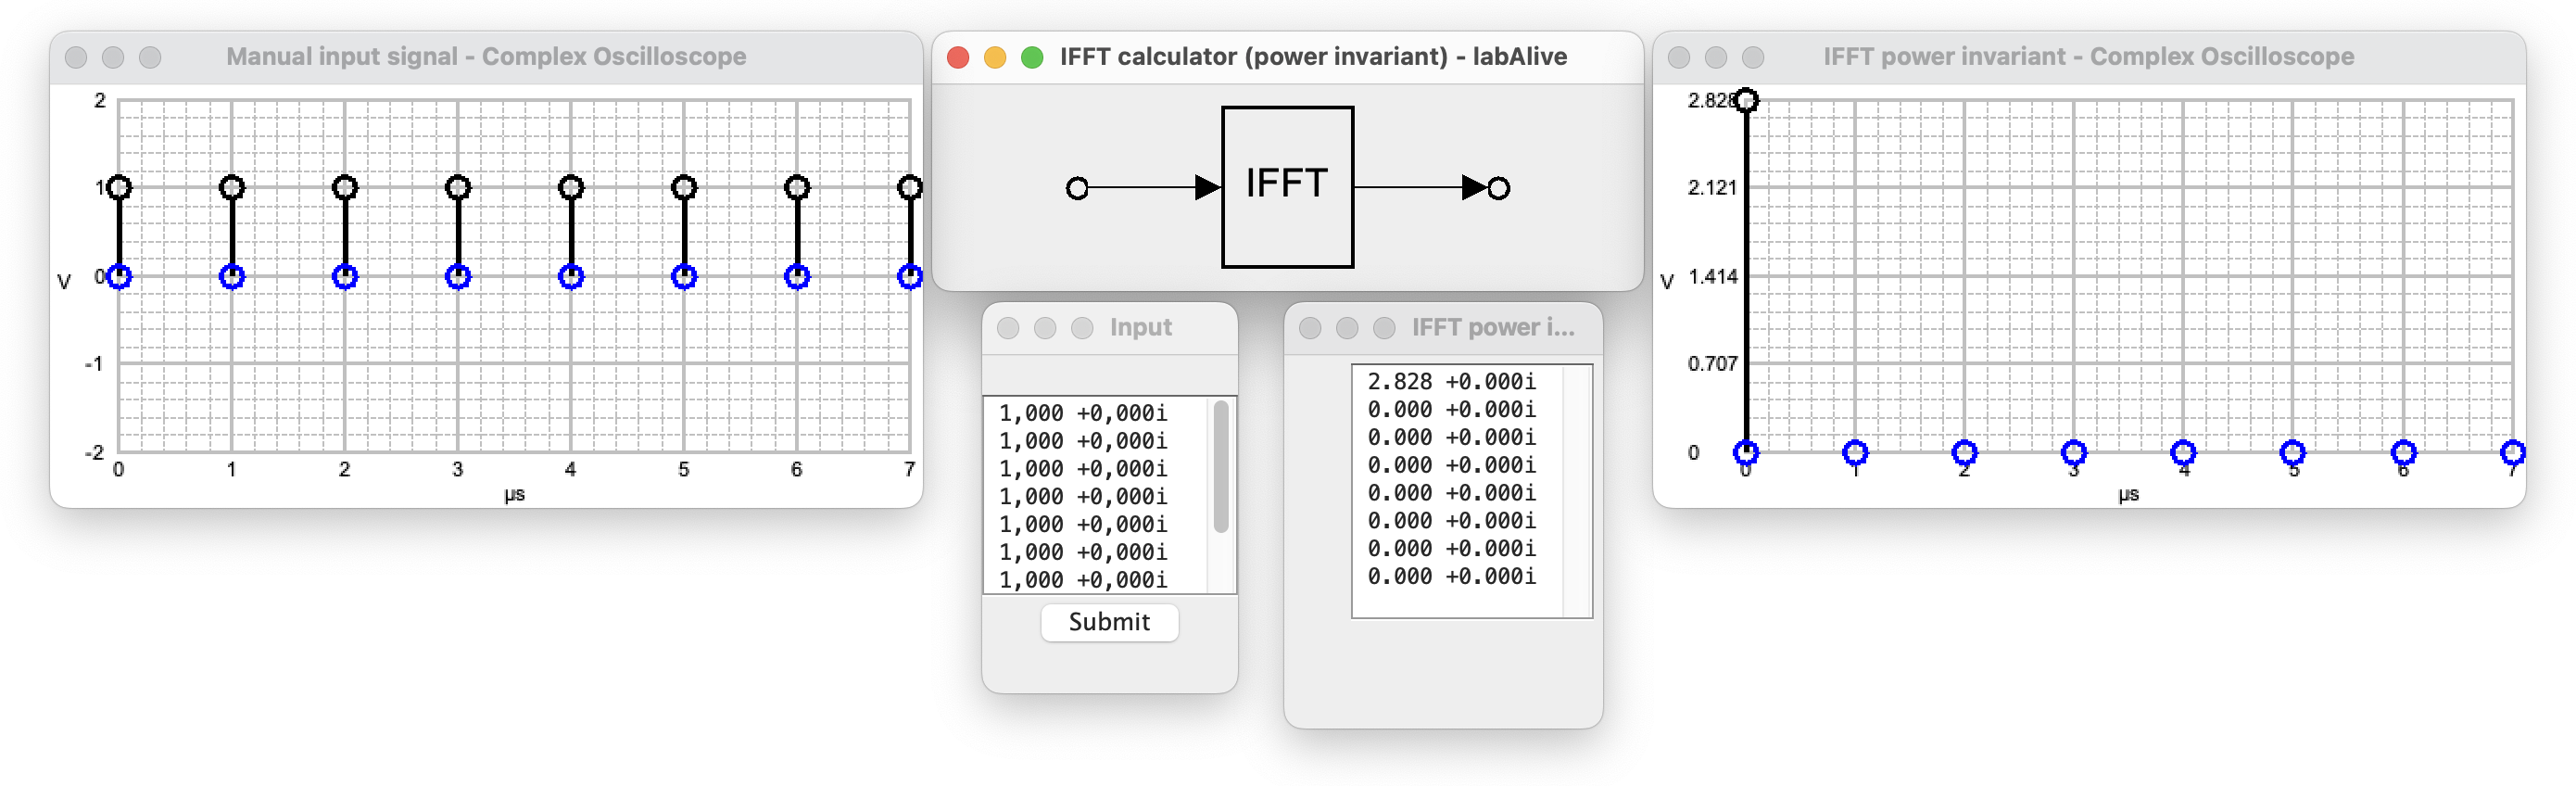 ifftpowerinvariant